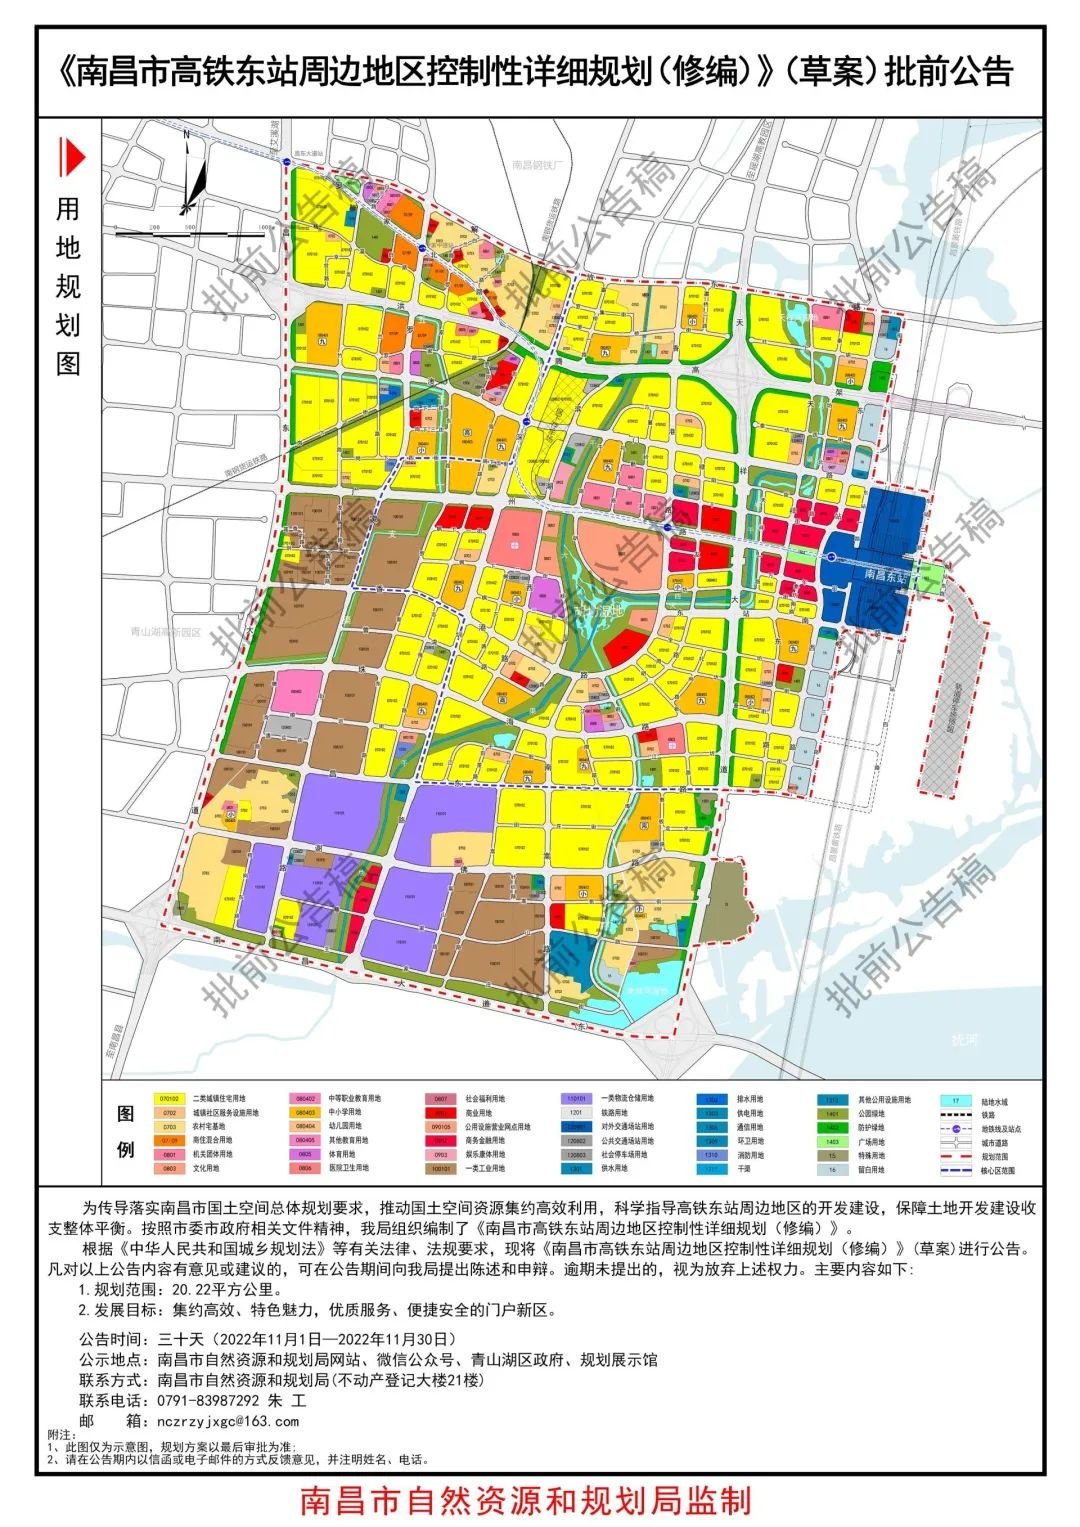 南昌高铁东站周边地区规划批前公示中 规划范围20.22平方公里